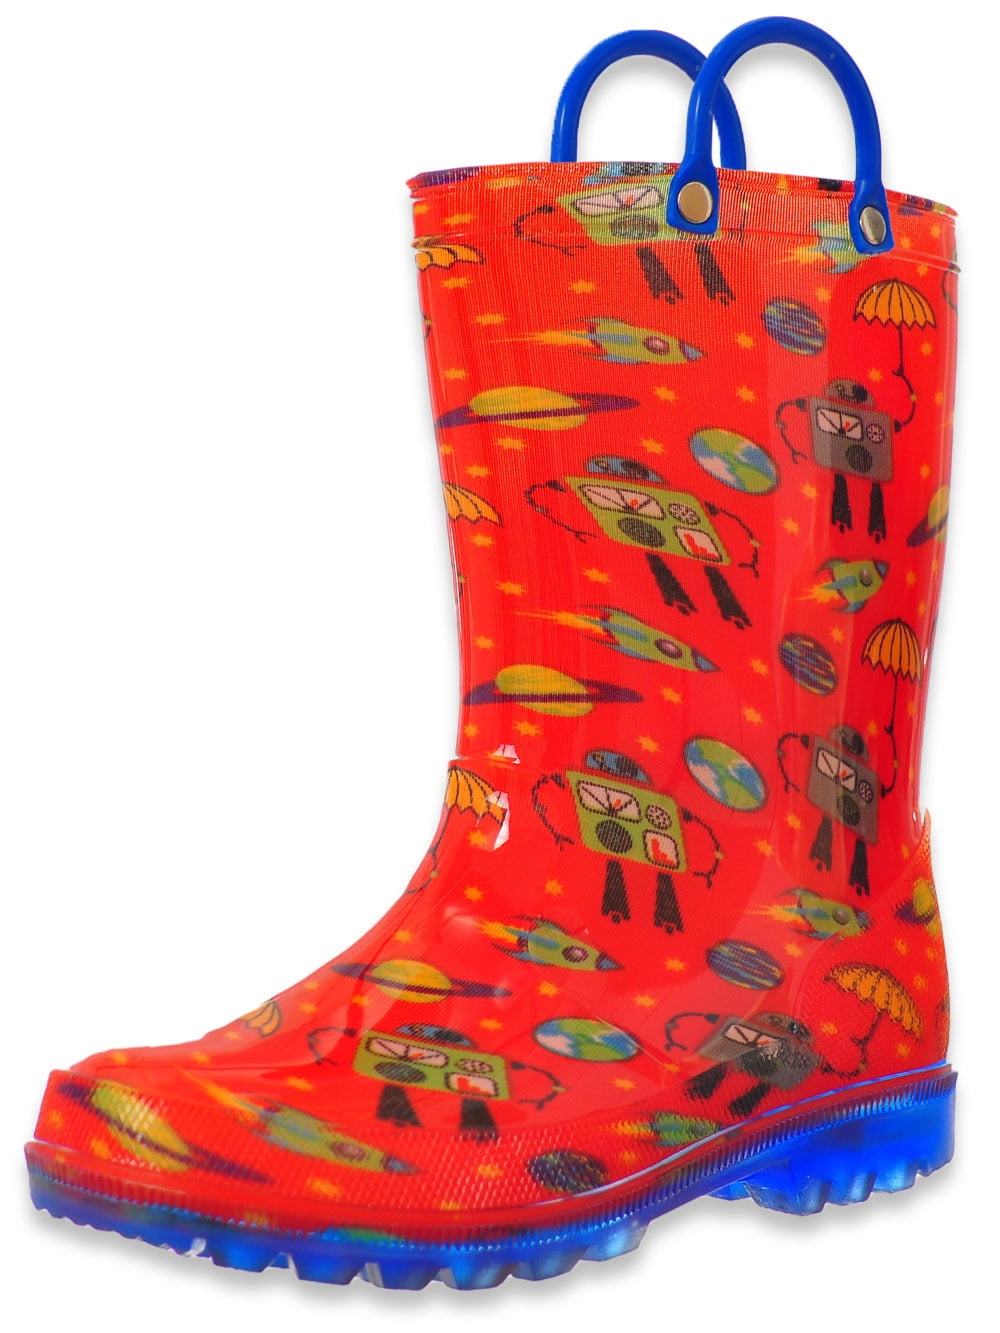 light up rain boots walmart